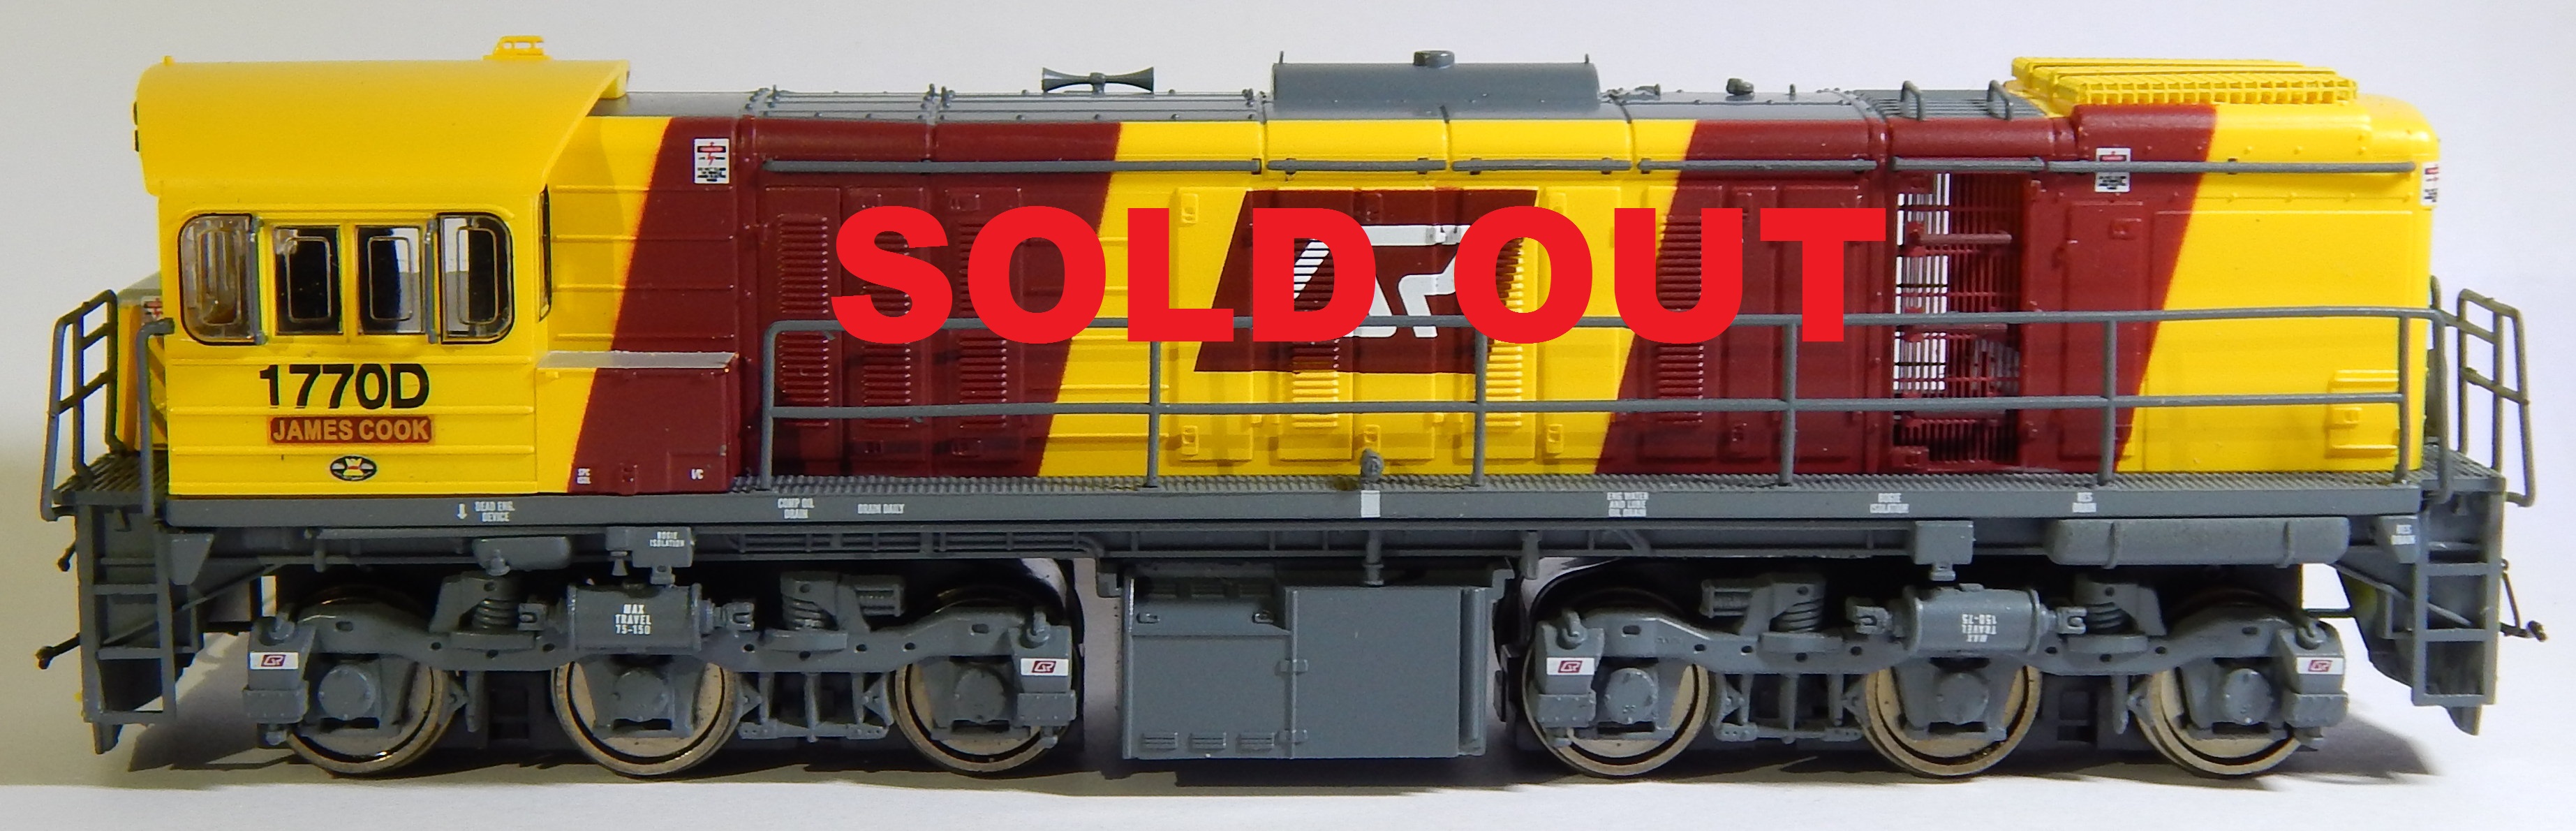 RTR059 1720 Class Locomotive #1770D JAMES COOK HOn3½